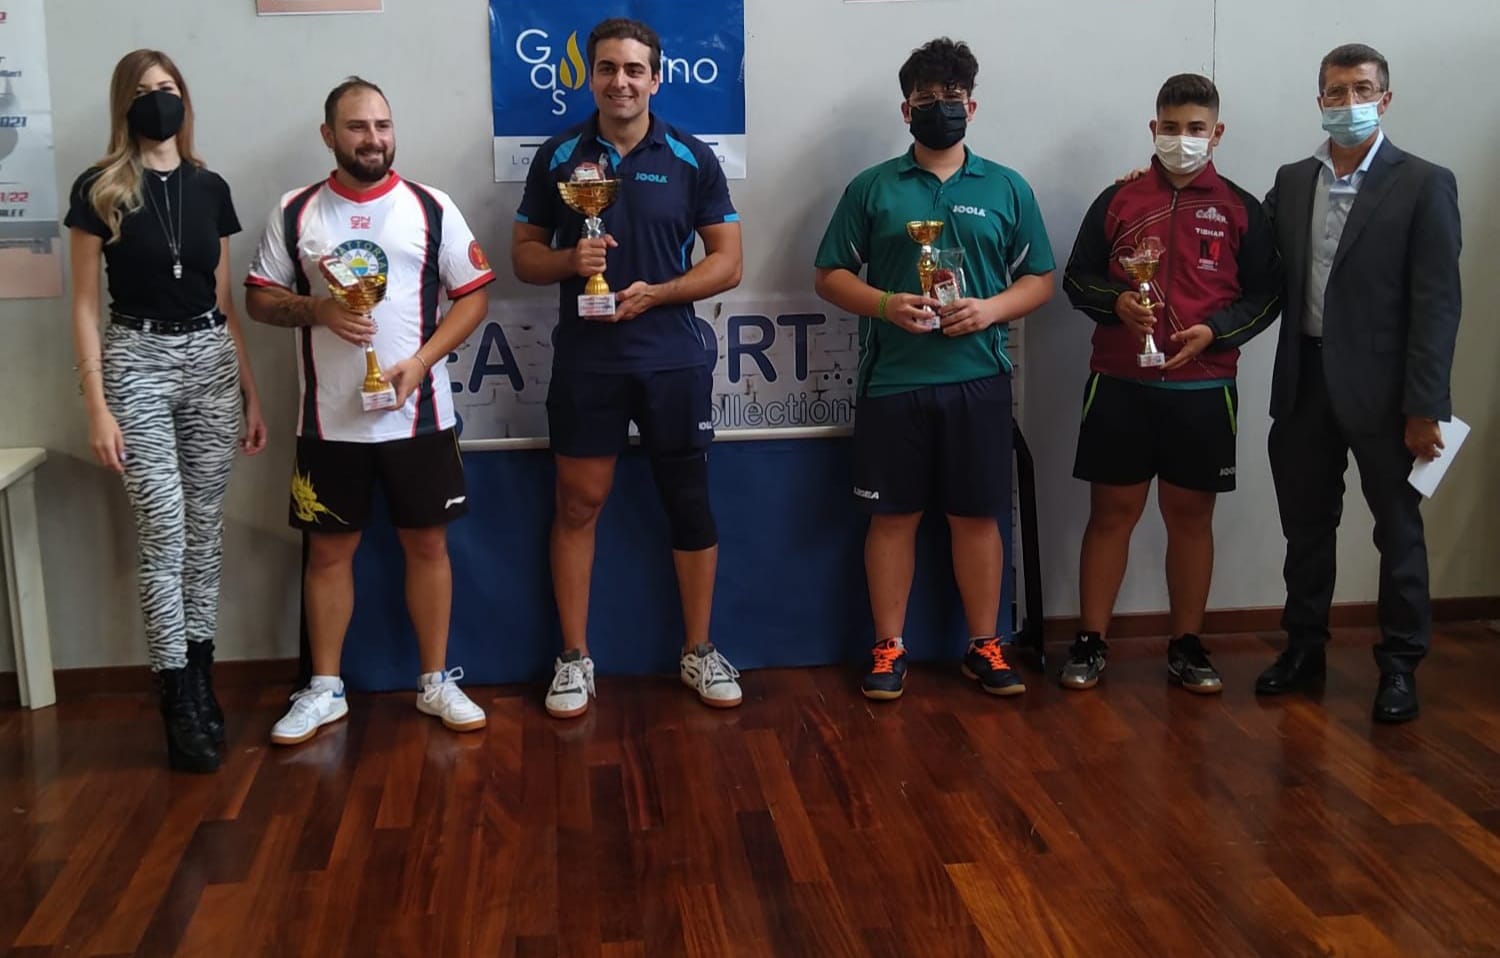 Torneo regionale 9 Memorial Pasquale Amoroso 2021 podio di quarta categoria